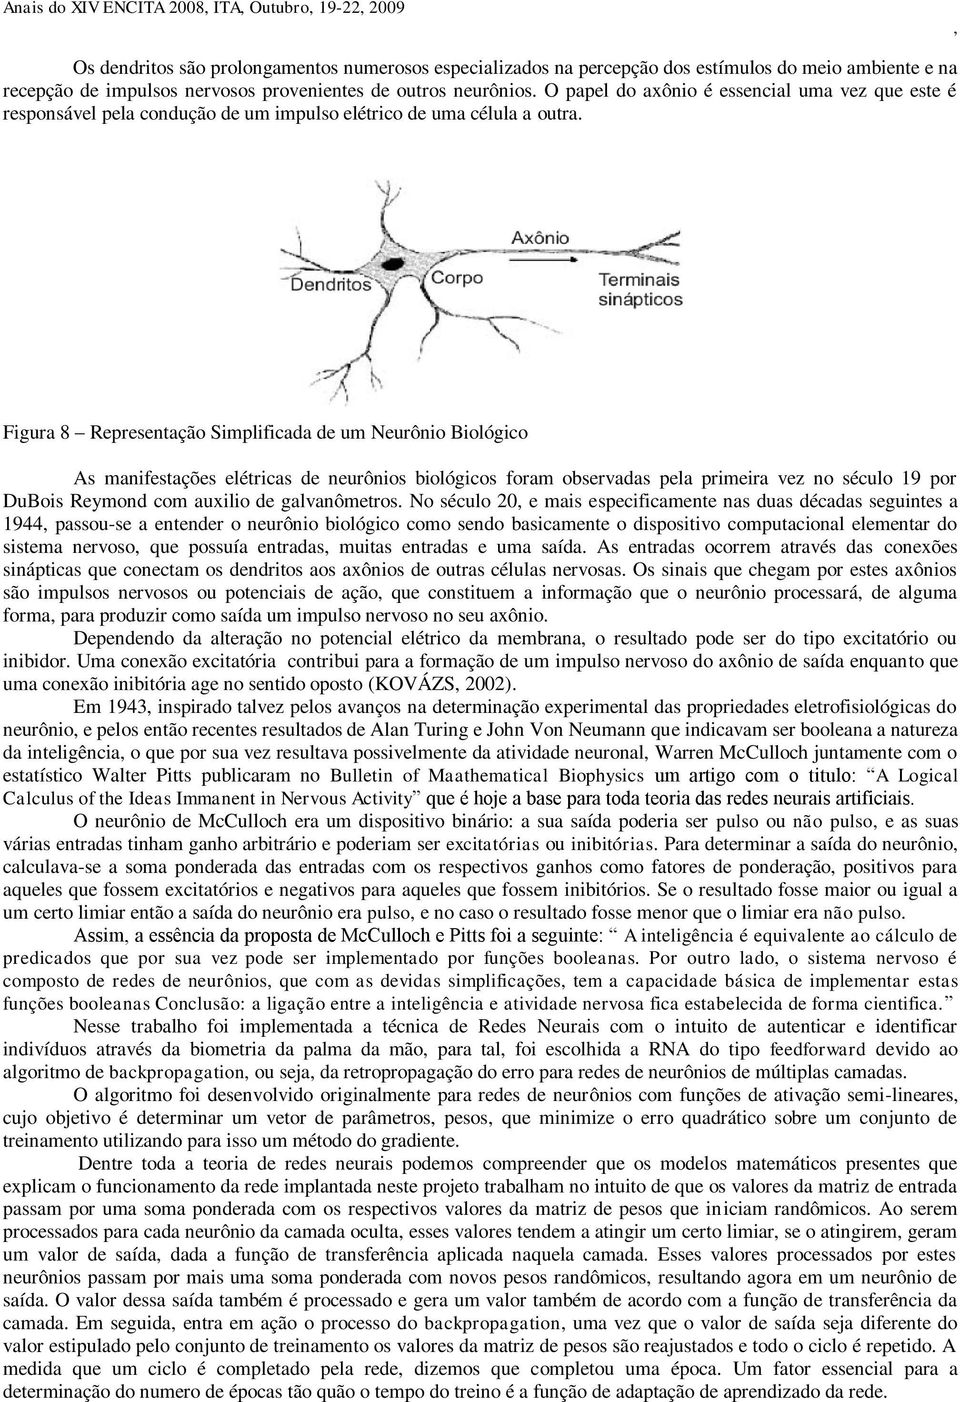 Figura 8 Representação Simplificada de um Neurônio Biológico As manifestações elétricas de neurônios biológicos foram observadas pela primeira vez no século 19 por DuBois Reymond com auxilio de